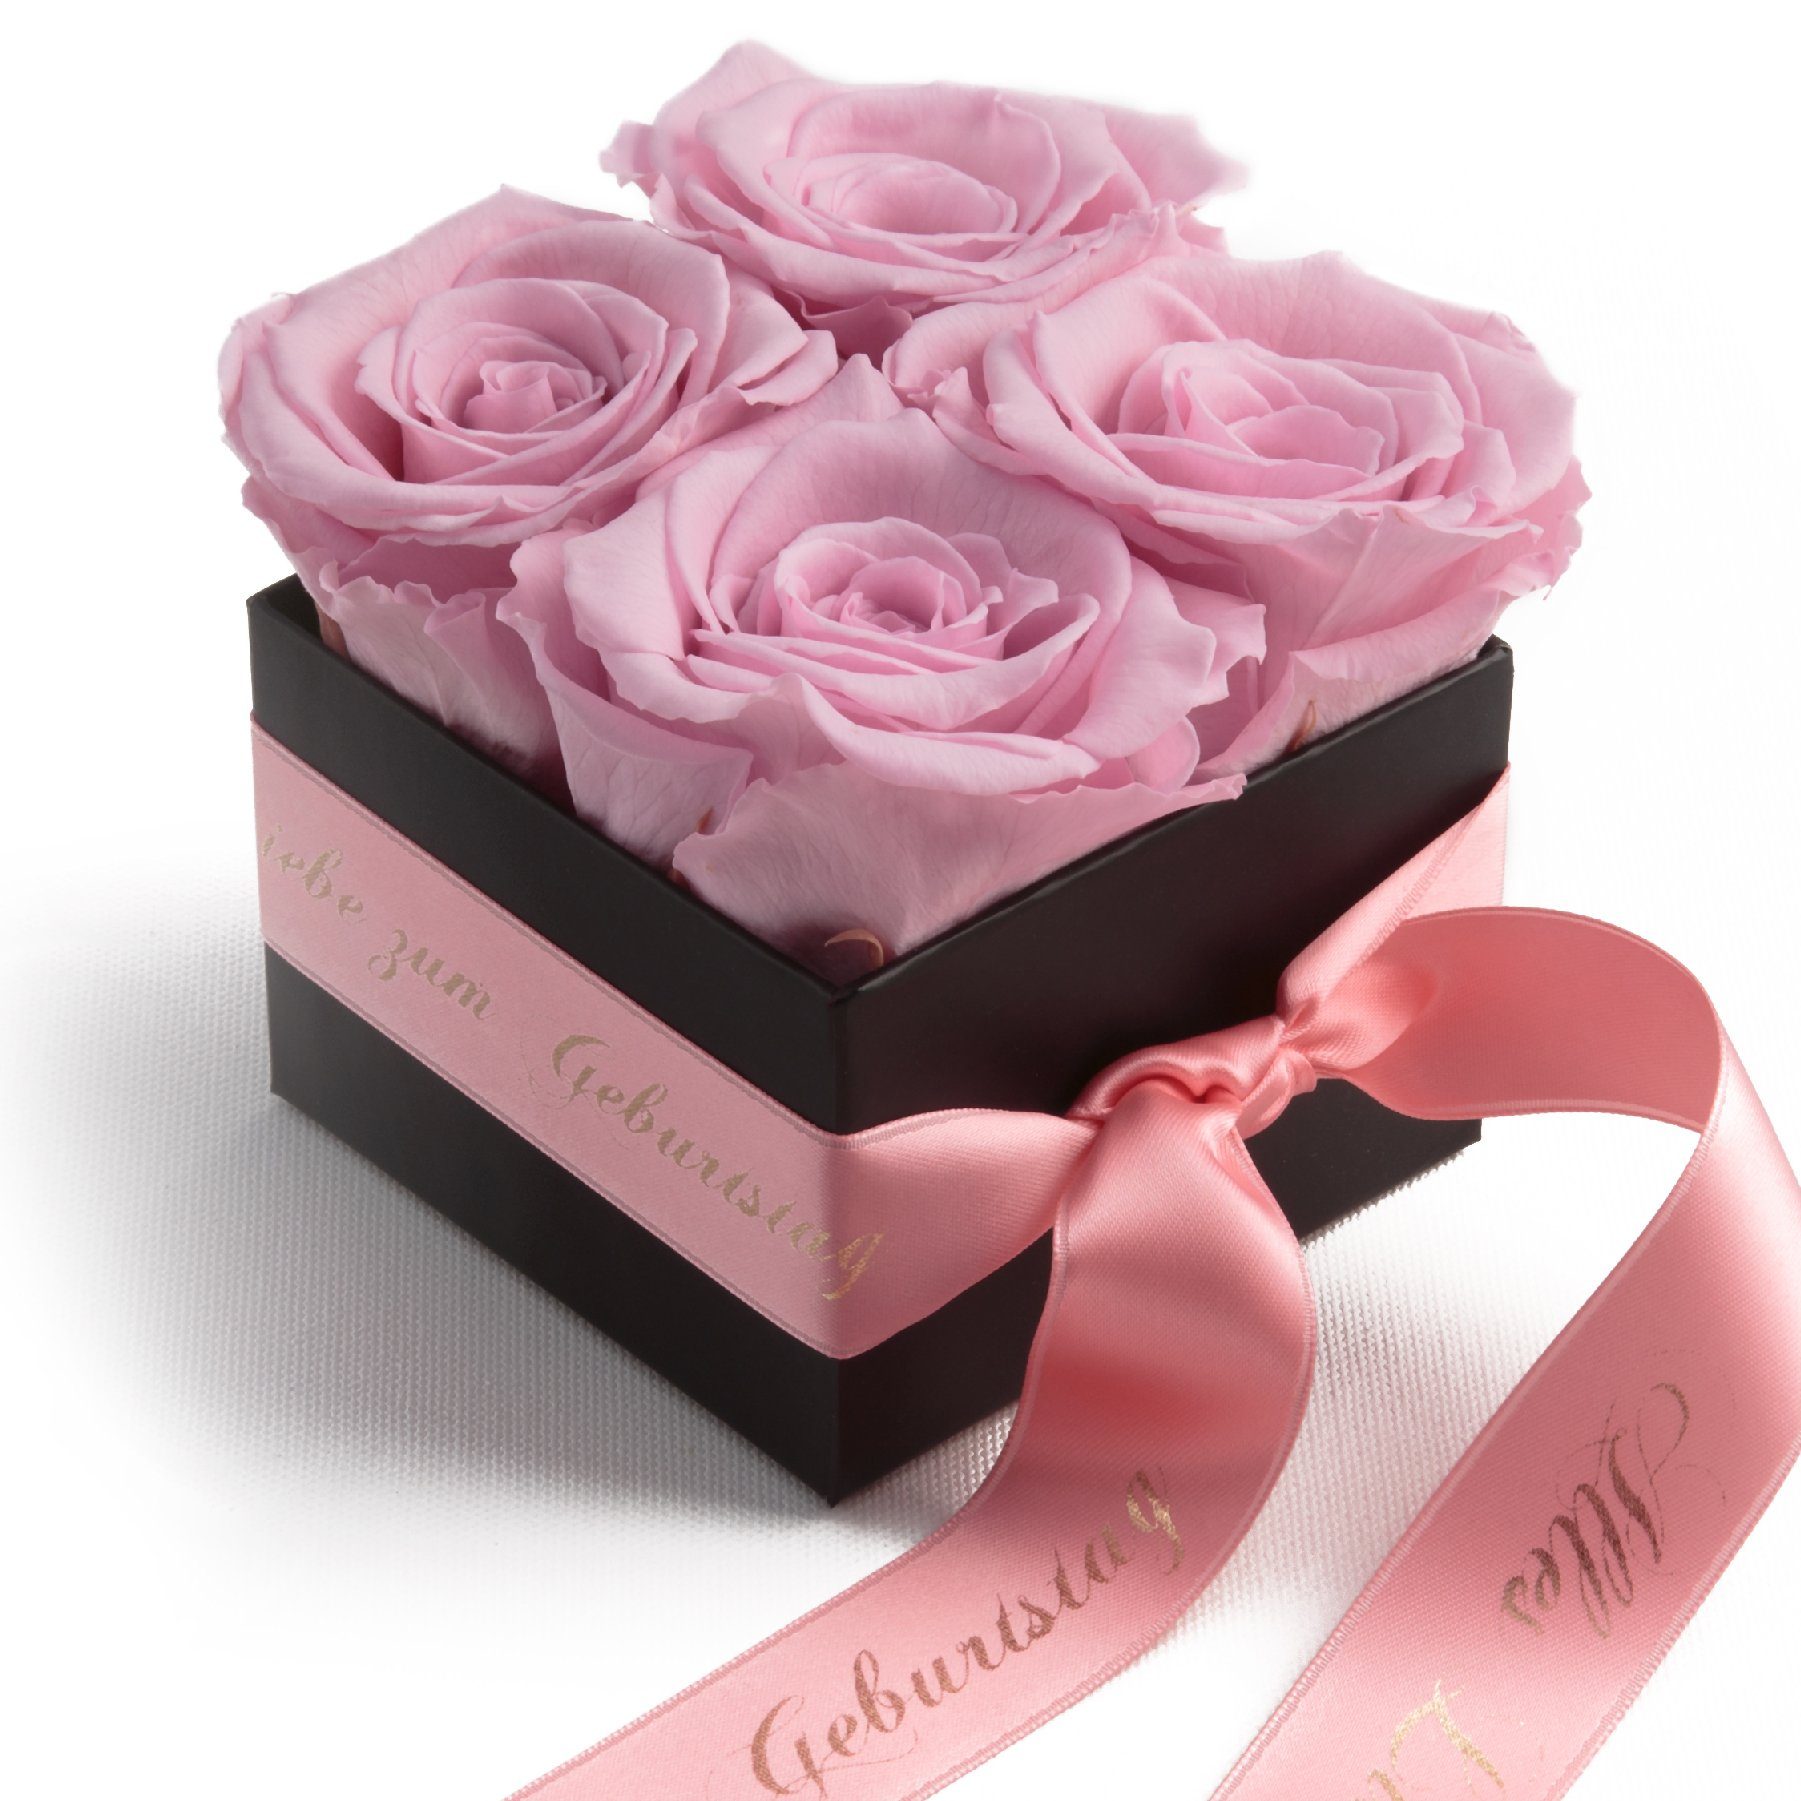 ROSEMARIE SCHULZ Heidelberg Dekoobjekt Rosenbox echte Rosen Alles Liebe zum Geburtstag Geschenk für Frauen (1 St), Echte konservierte Rosen Rosa